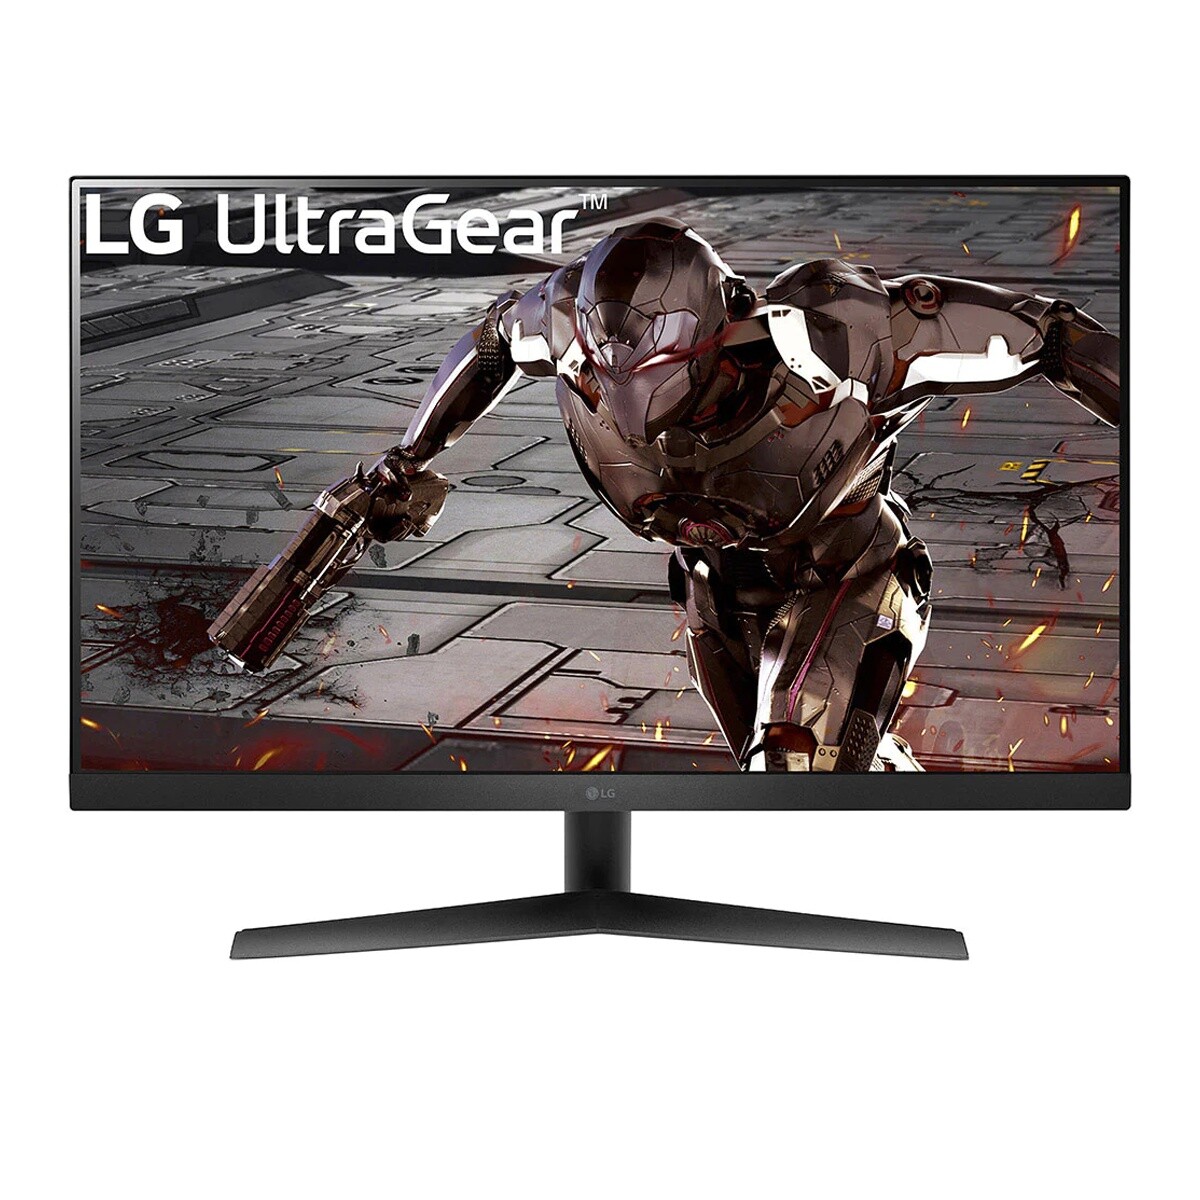 Monitor LG UltraGear 31.5" Full HD 165Hz HDMI / DisplayPort 32GN50R-B - Negra 